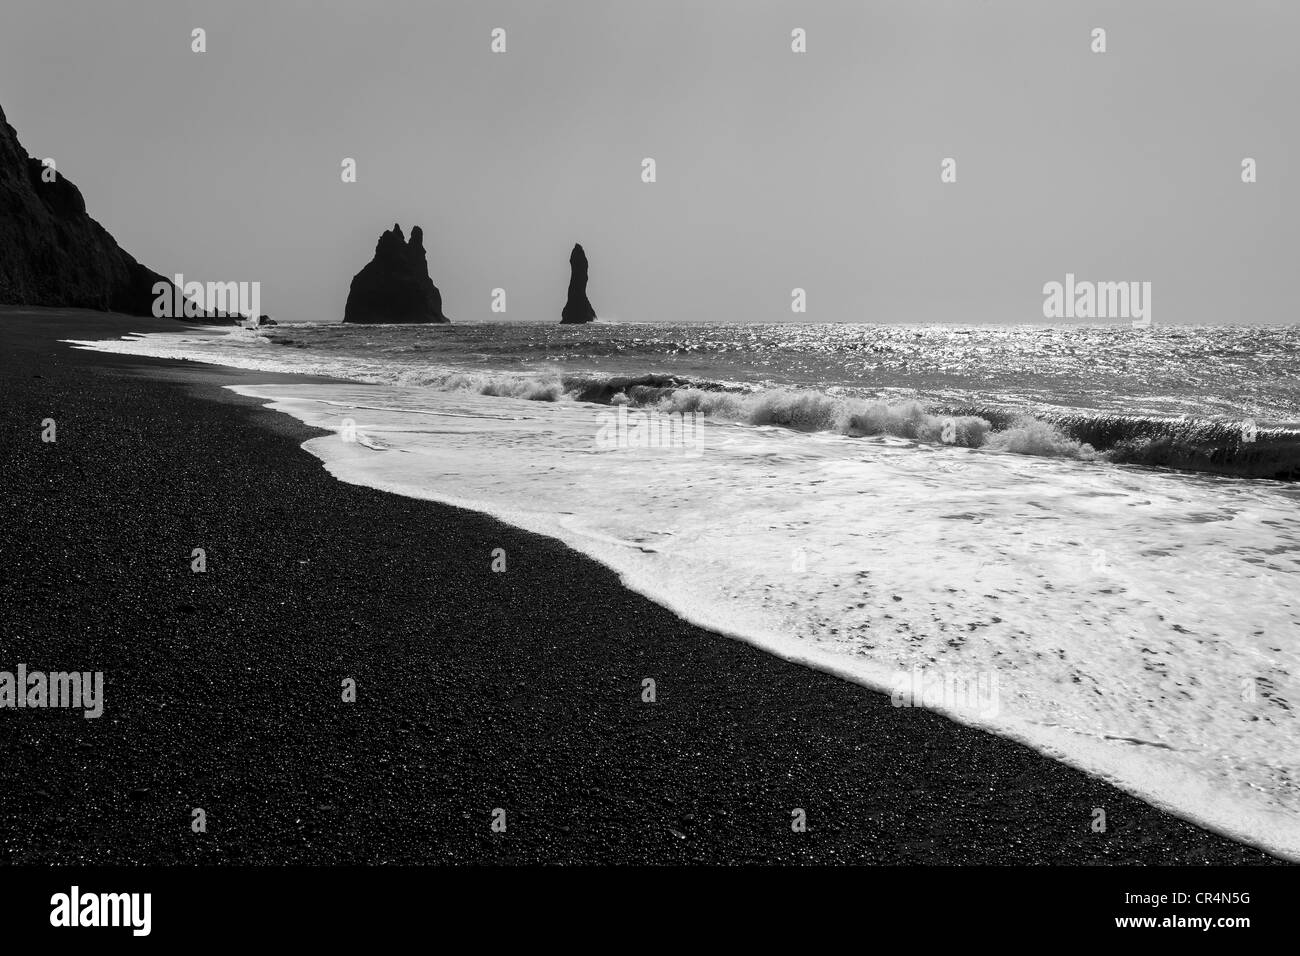 Du sable et de la mer Noire des structures rock pile au large de la plage de Vik sur une journée ensoleillée, l'Islande, Scandinavie Banque D'Images